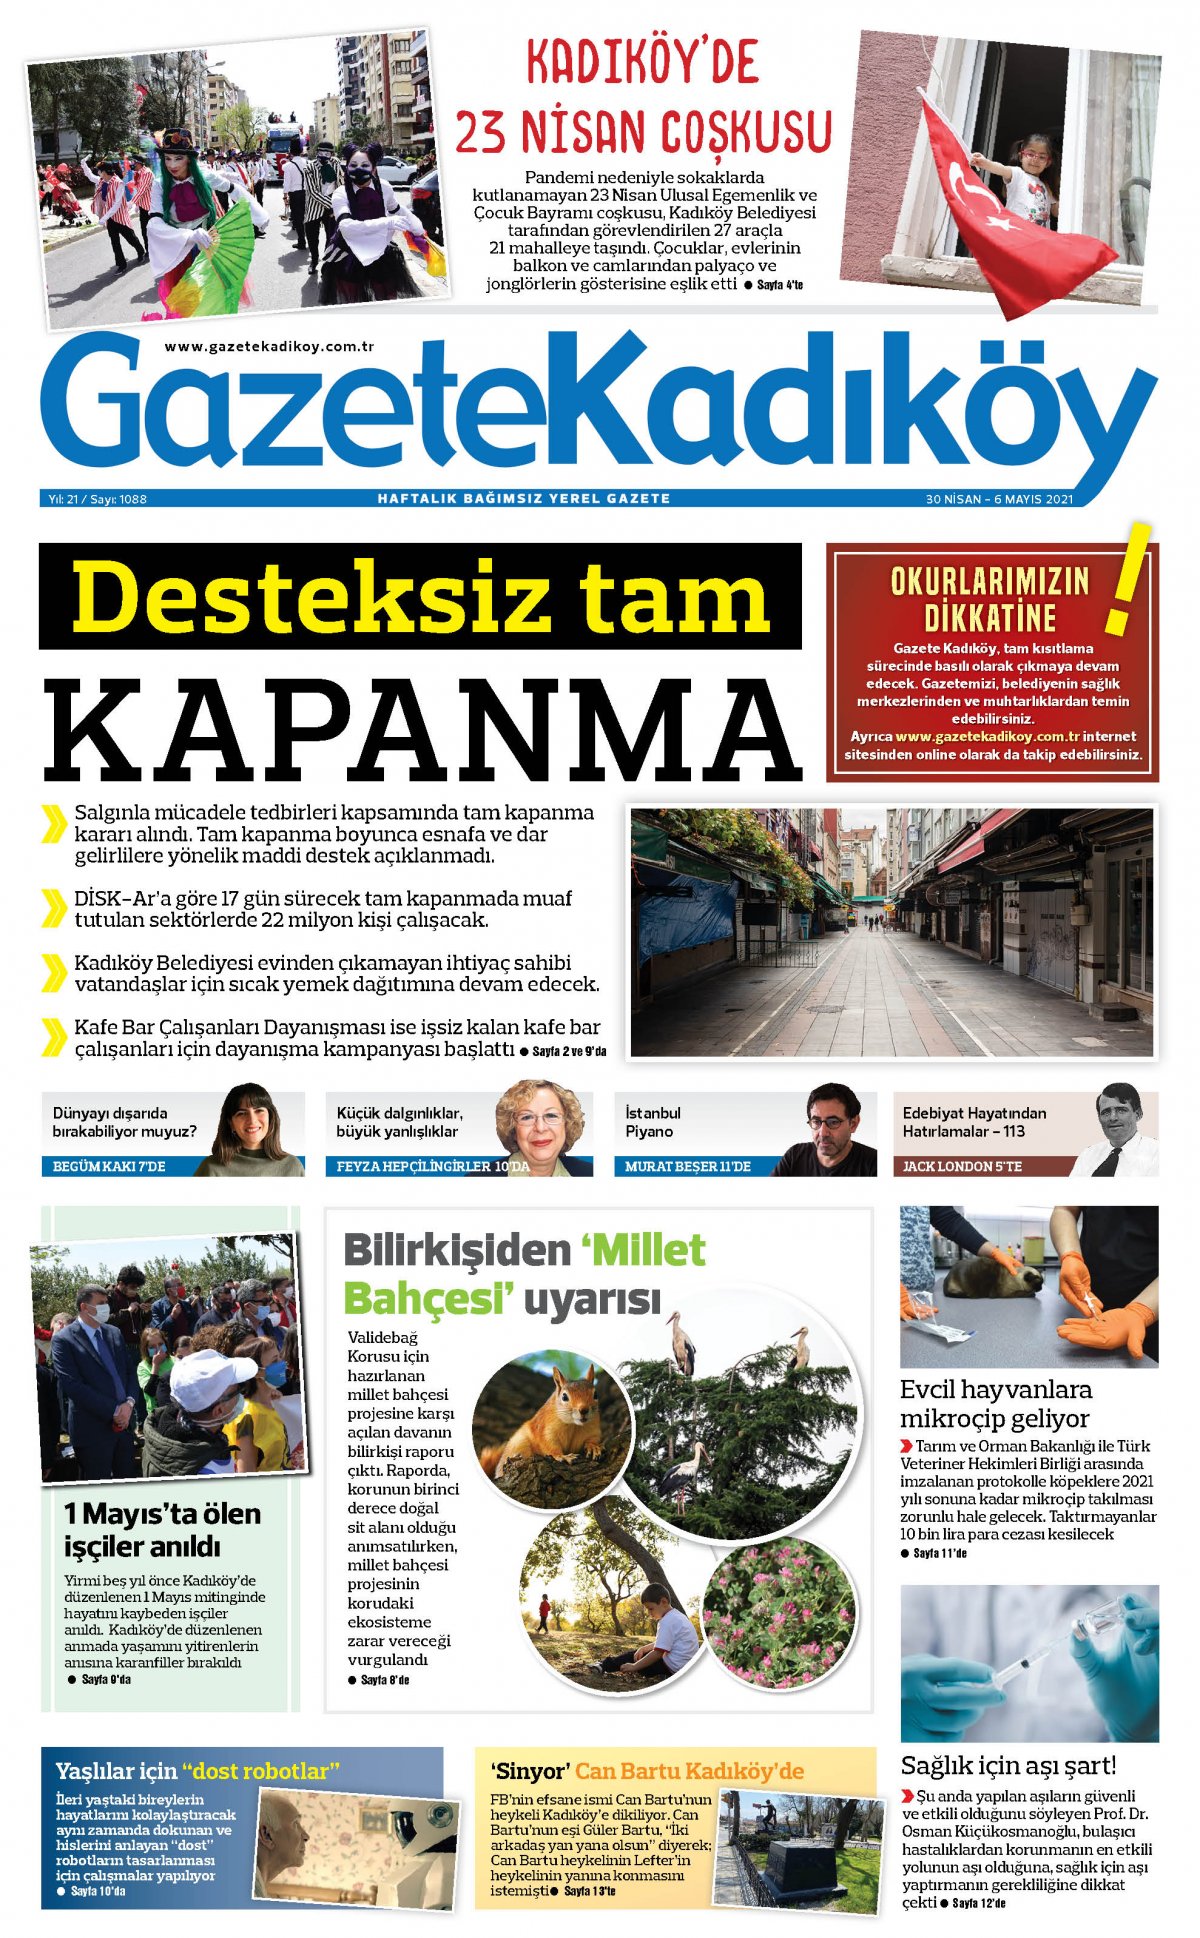 Gazete Kadıköy - 1088.Sayı